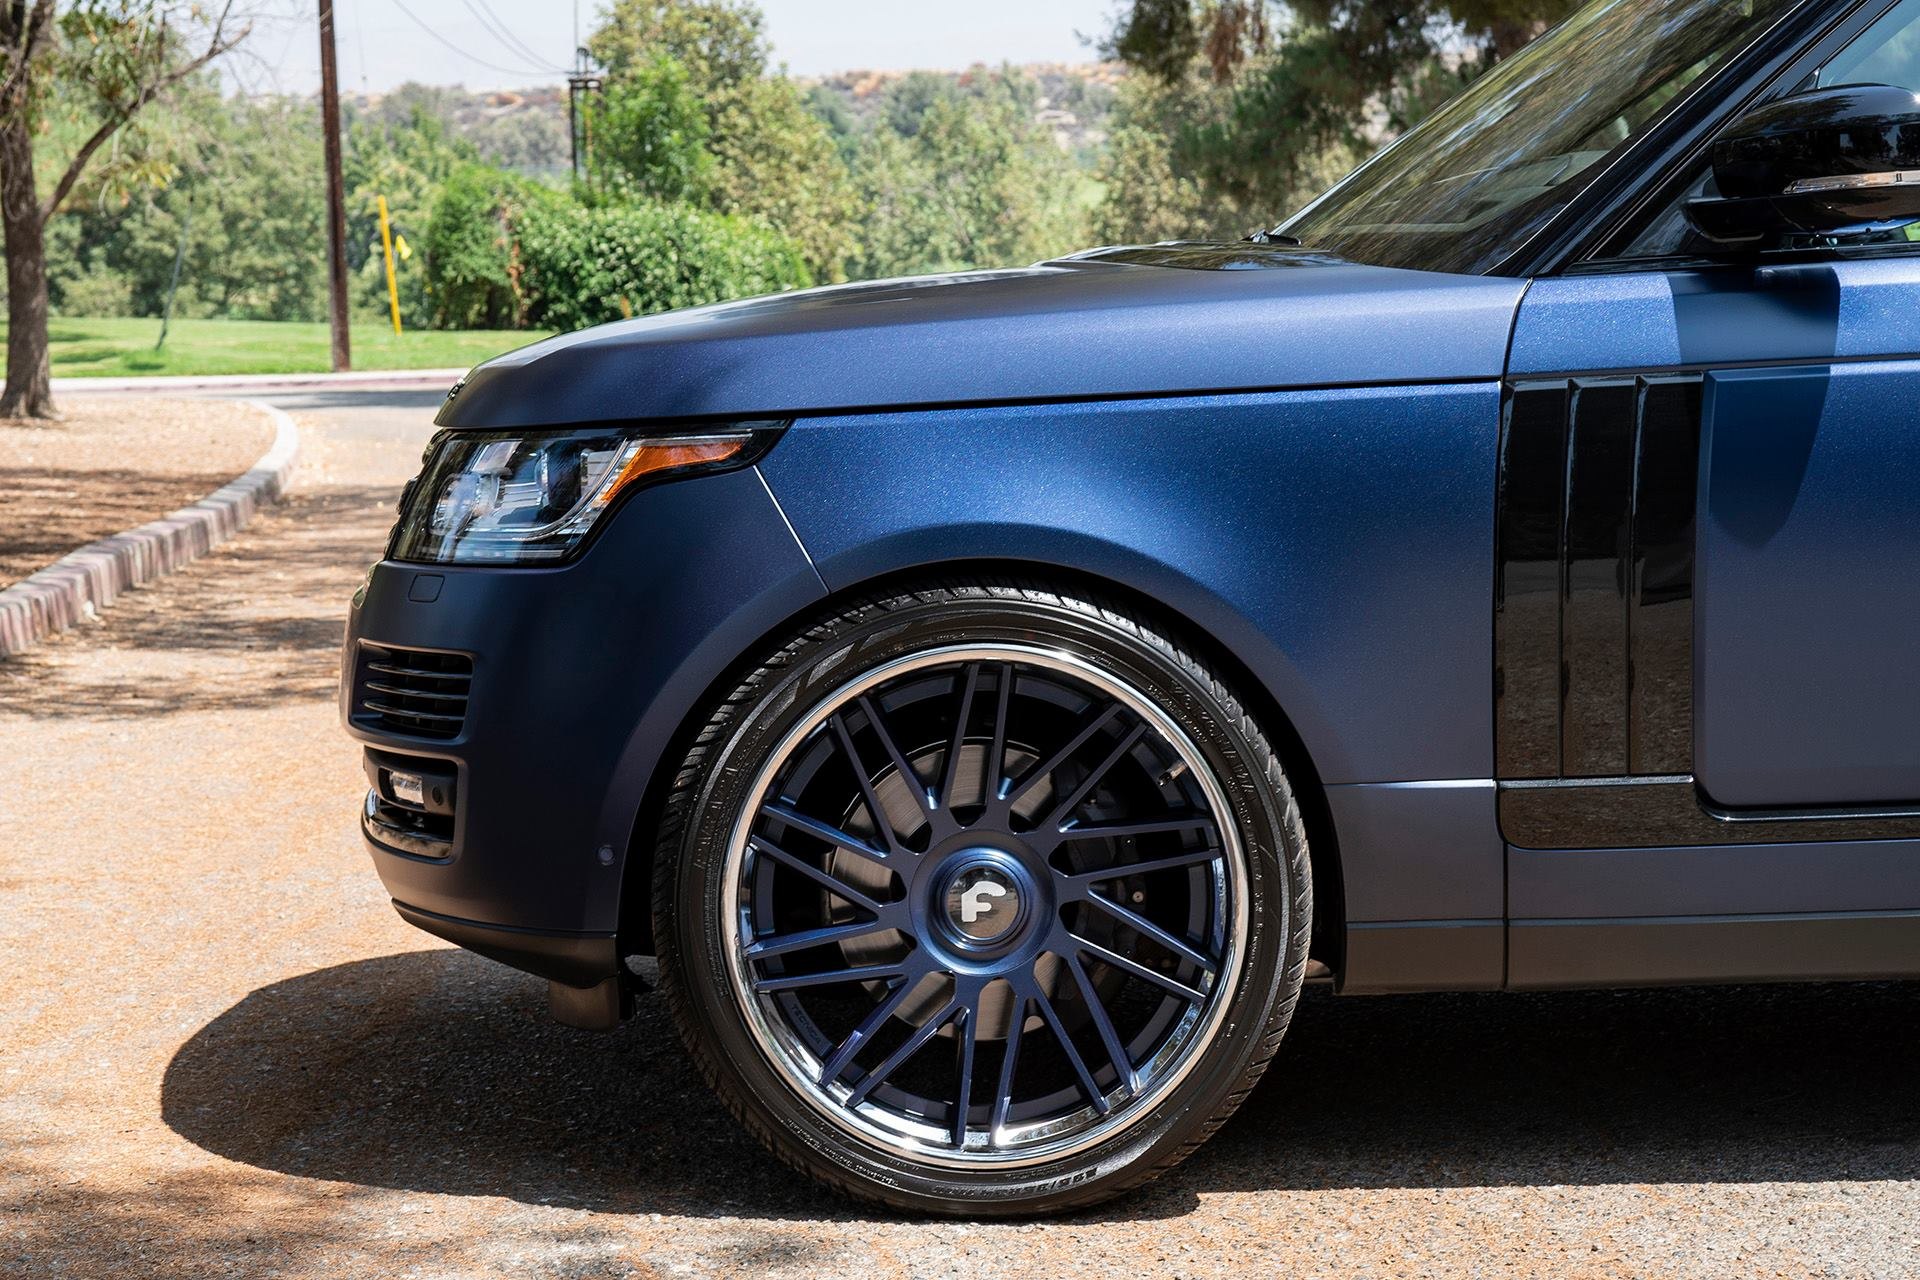 Forgiato Rims on Blue Range Rover - Photo by Forgiato